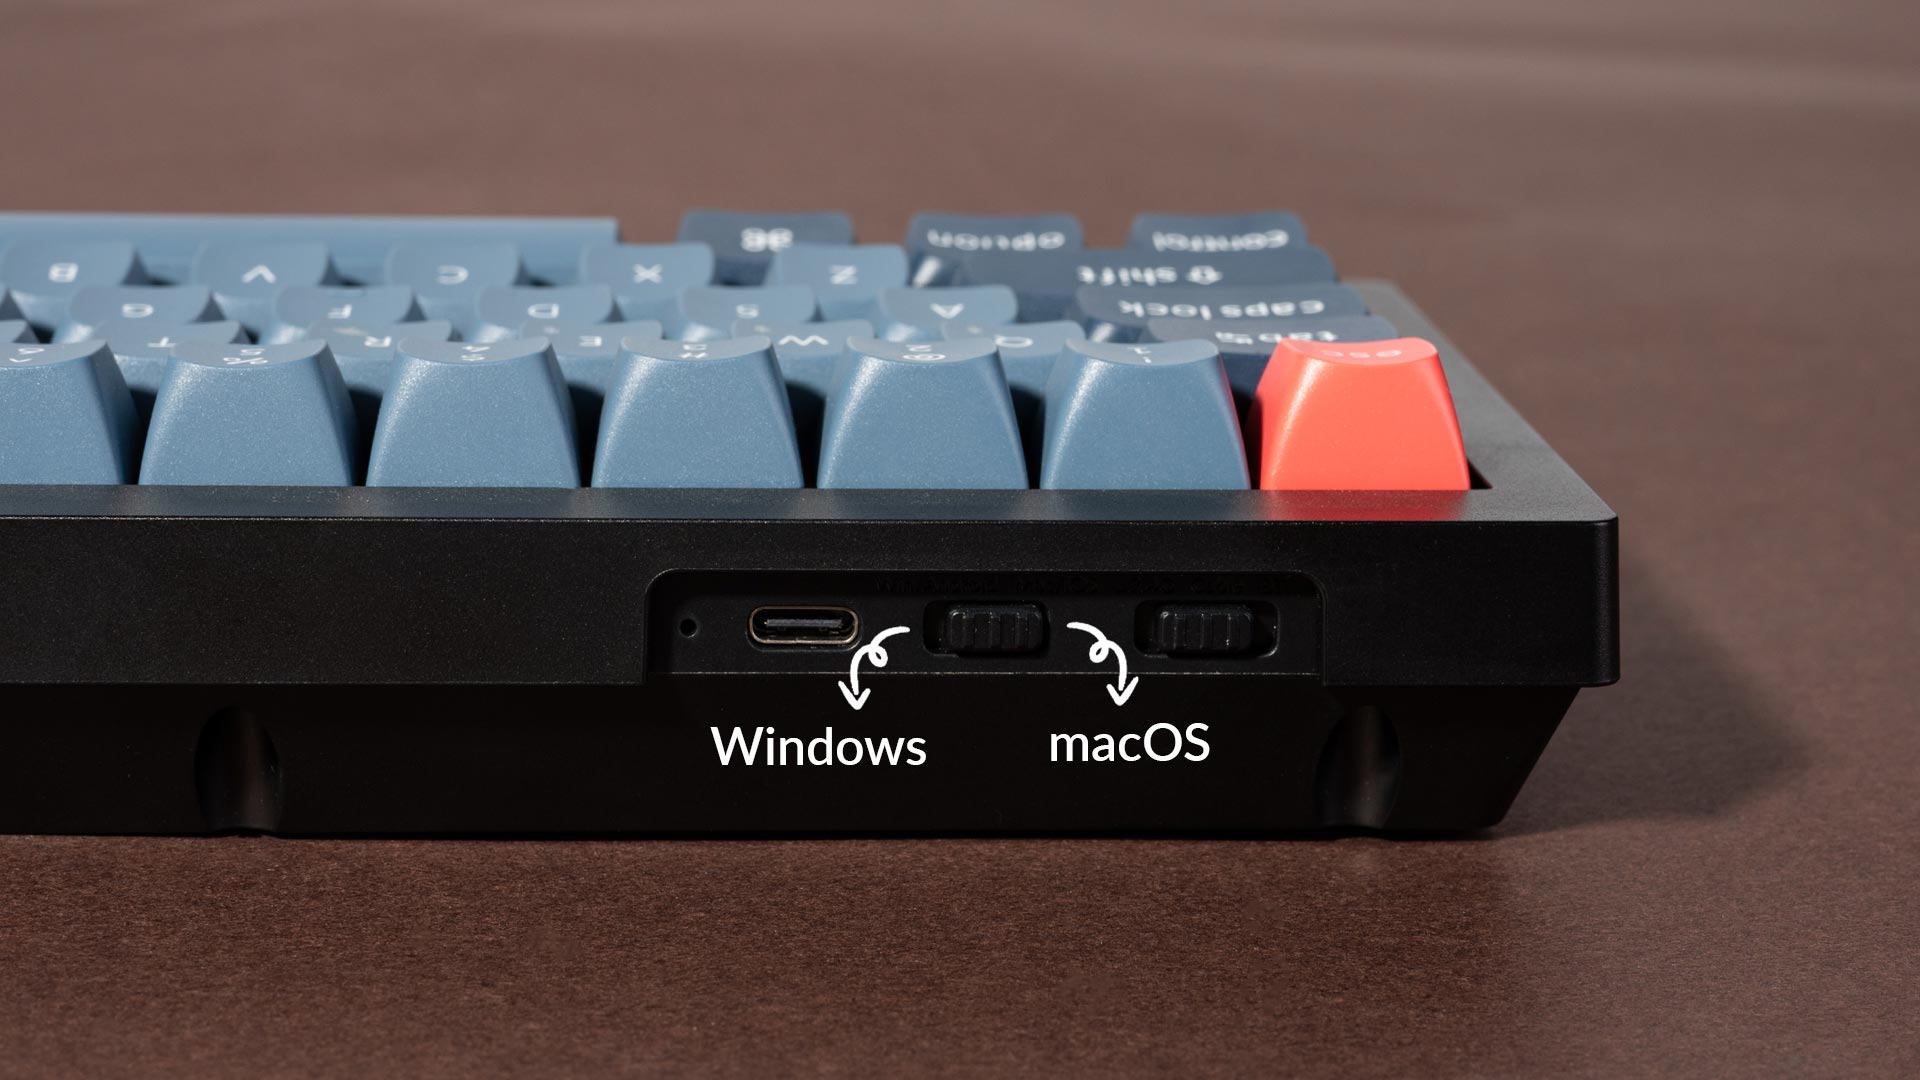 V3 MaxキーボードでWindowsとmacosの切り替えが可能